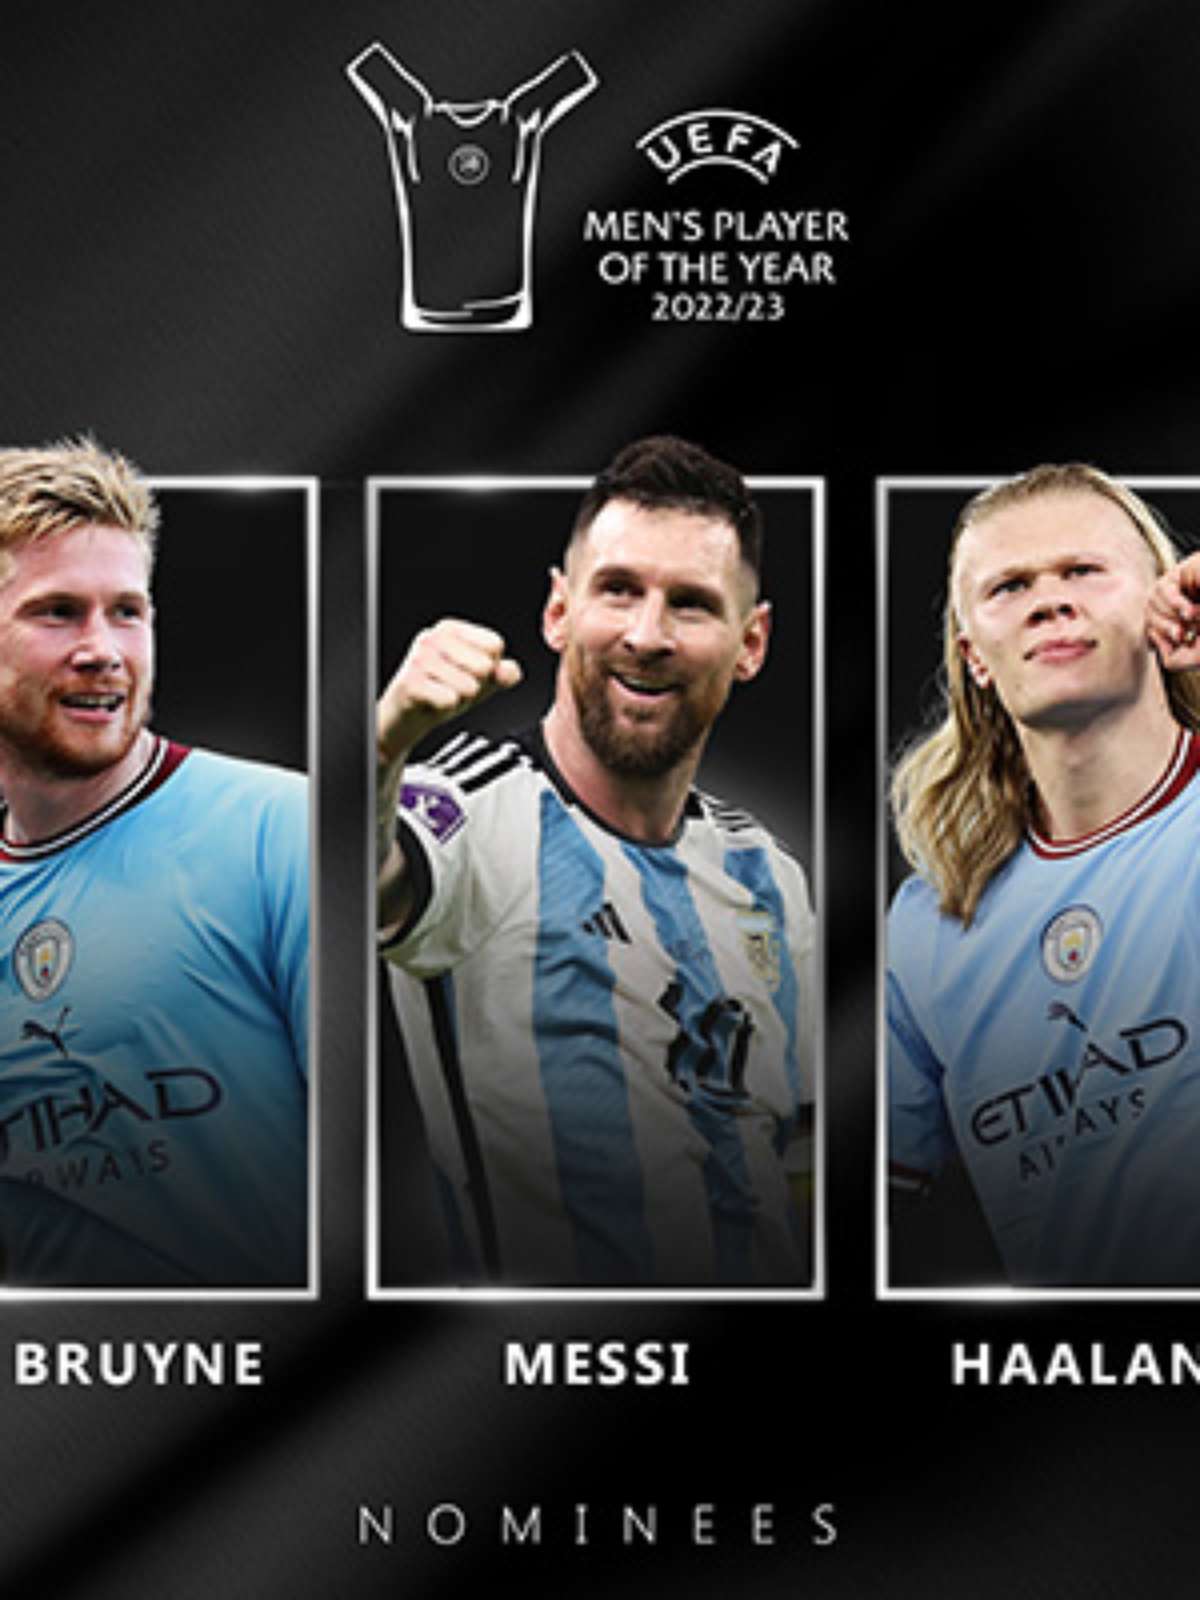 Os 5 últimos vencedores do prêmio da UEFA de Jogador do Ano